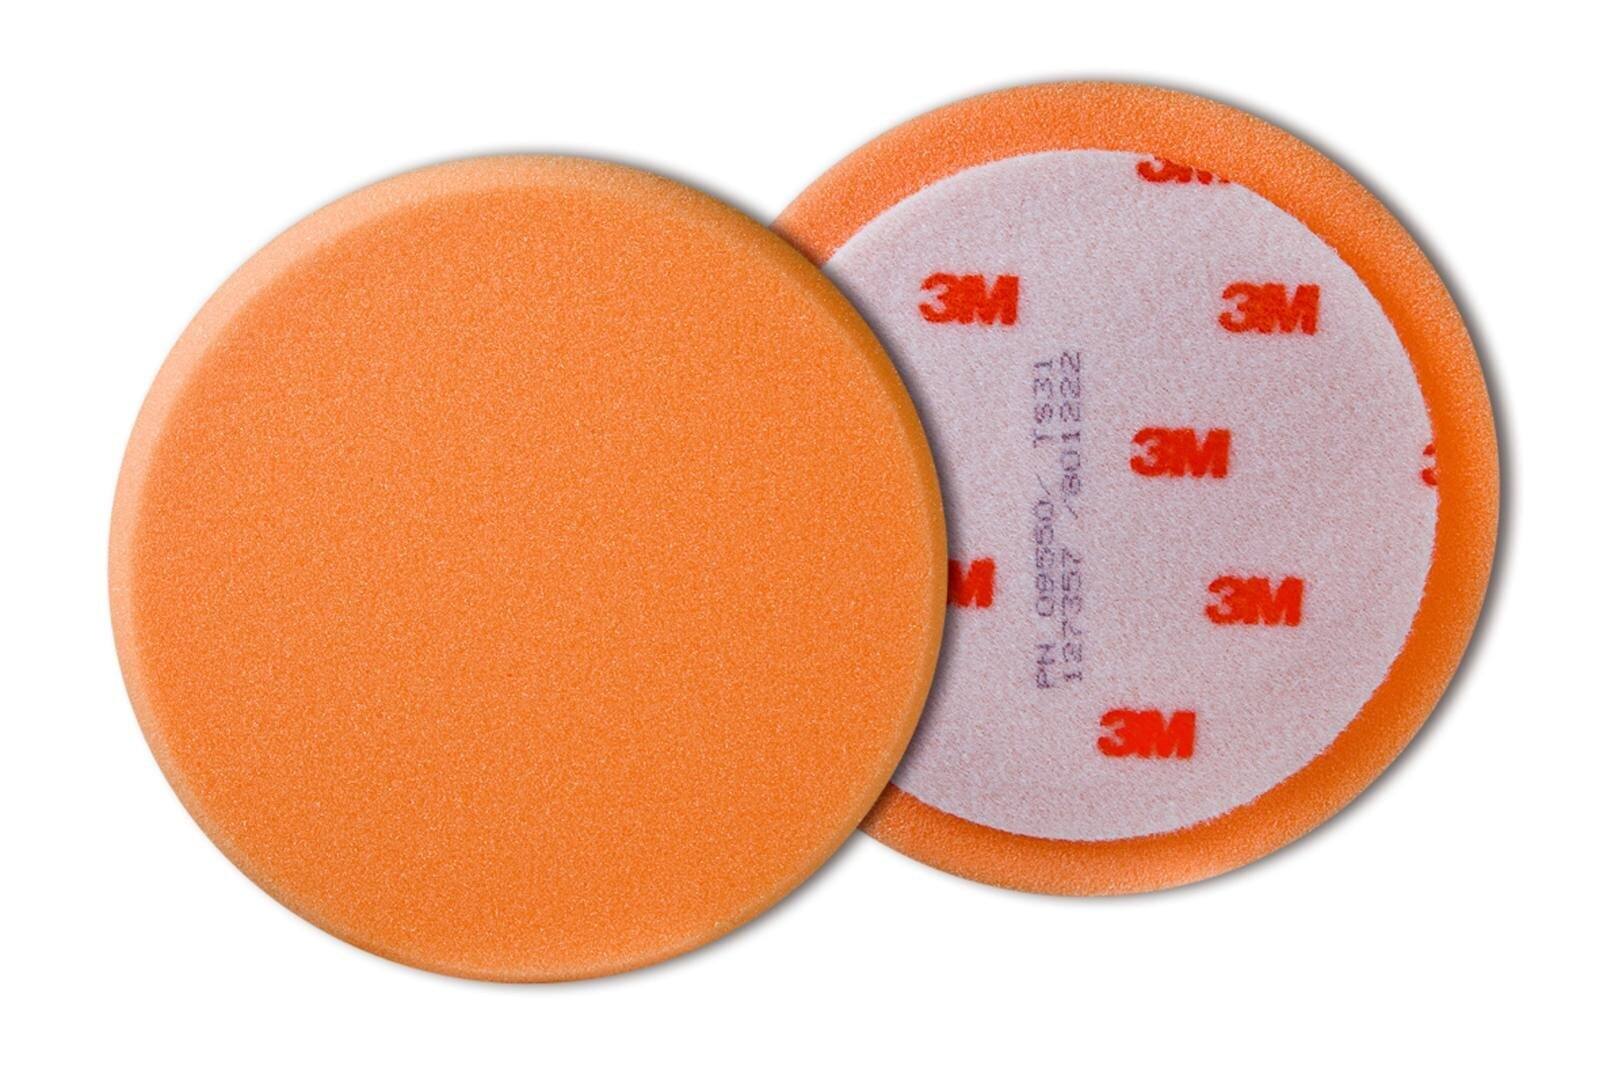 Schiuma per lucidatura 3M Perfect-it III, liscia, arancione, 150 mm #09550